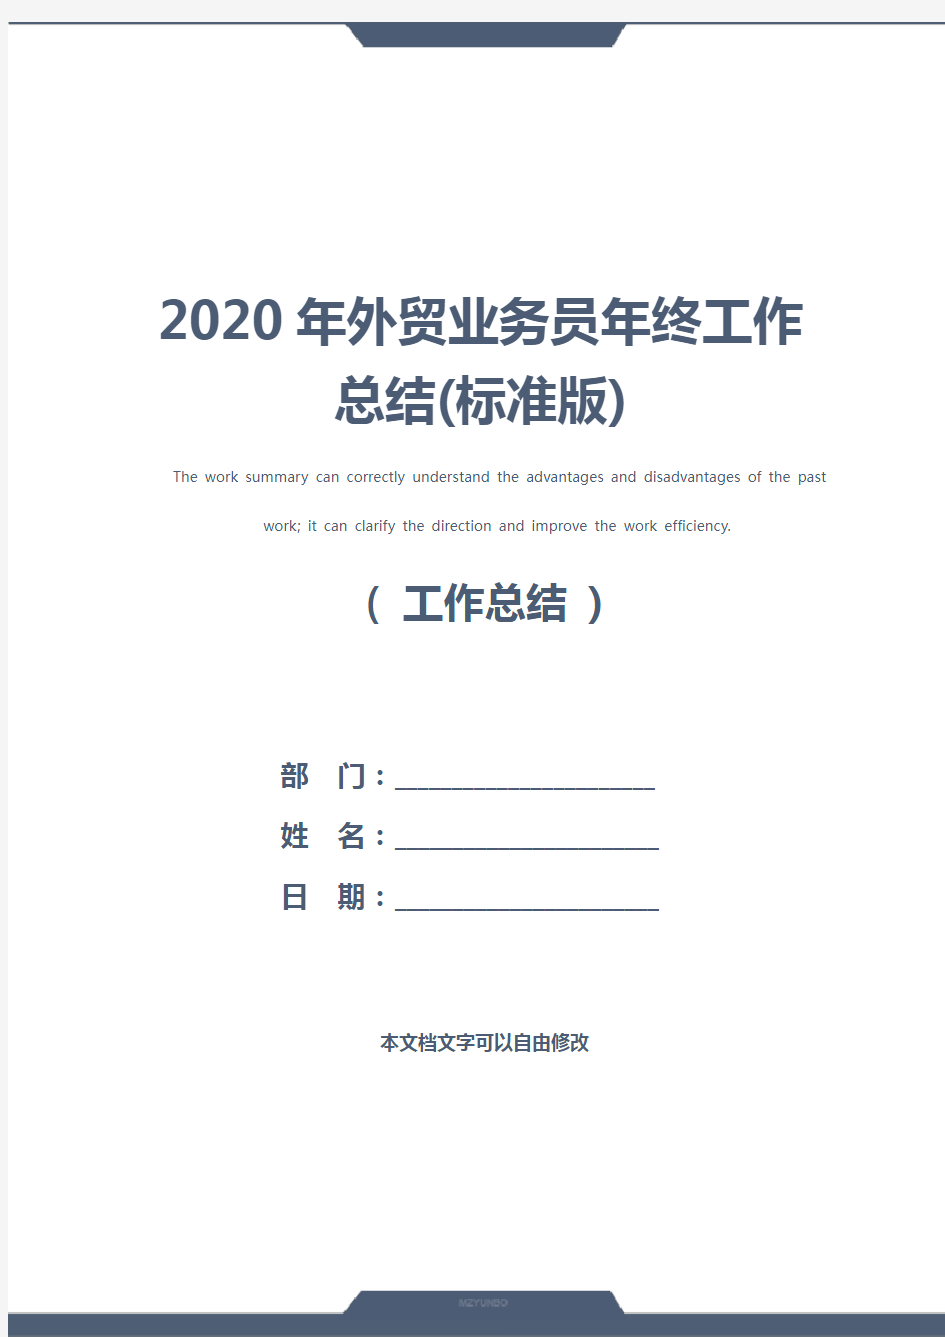 2020年外贸业务员年终工作总结(标准版)